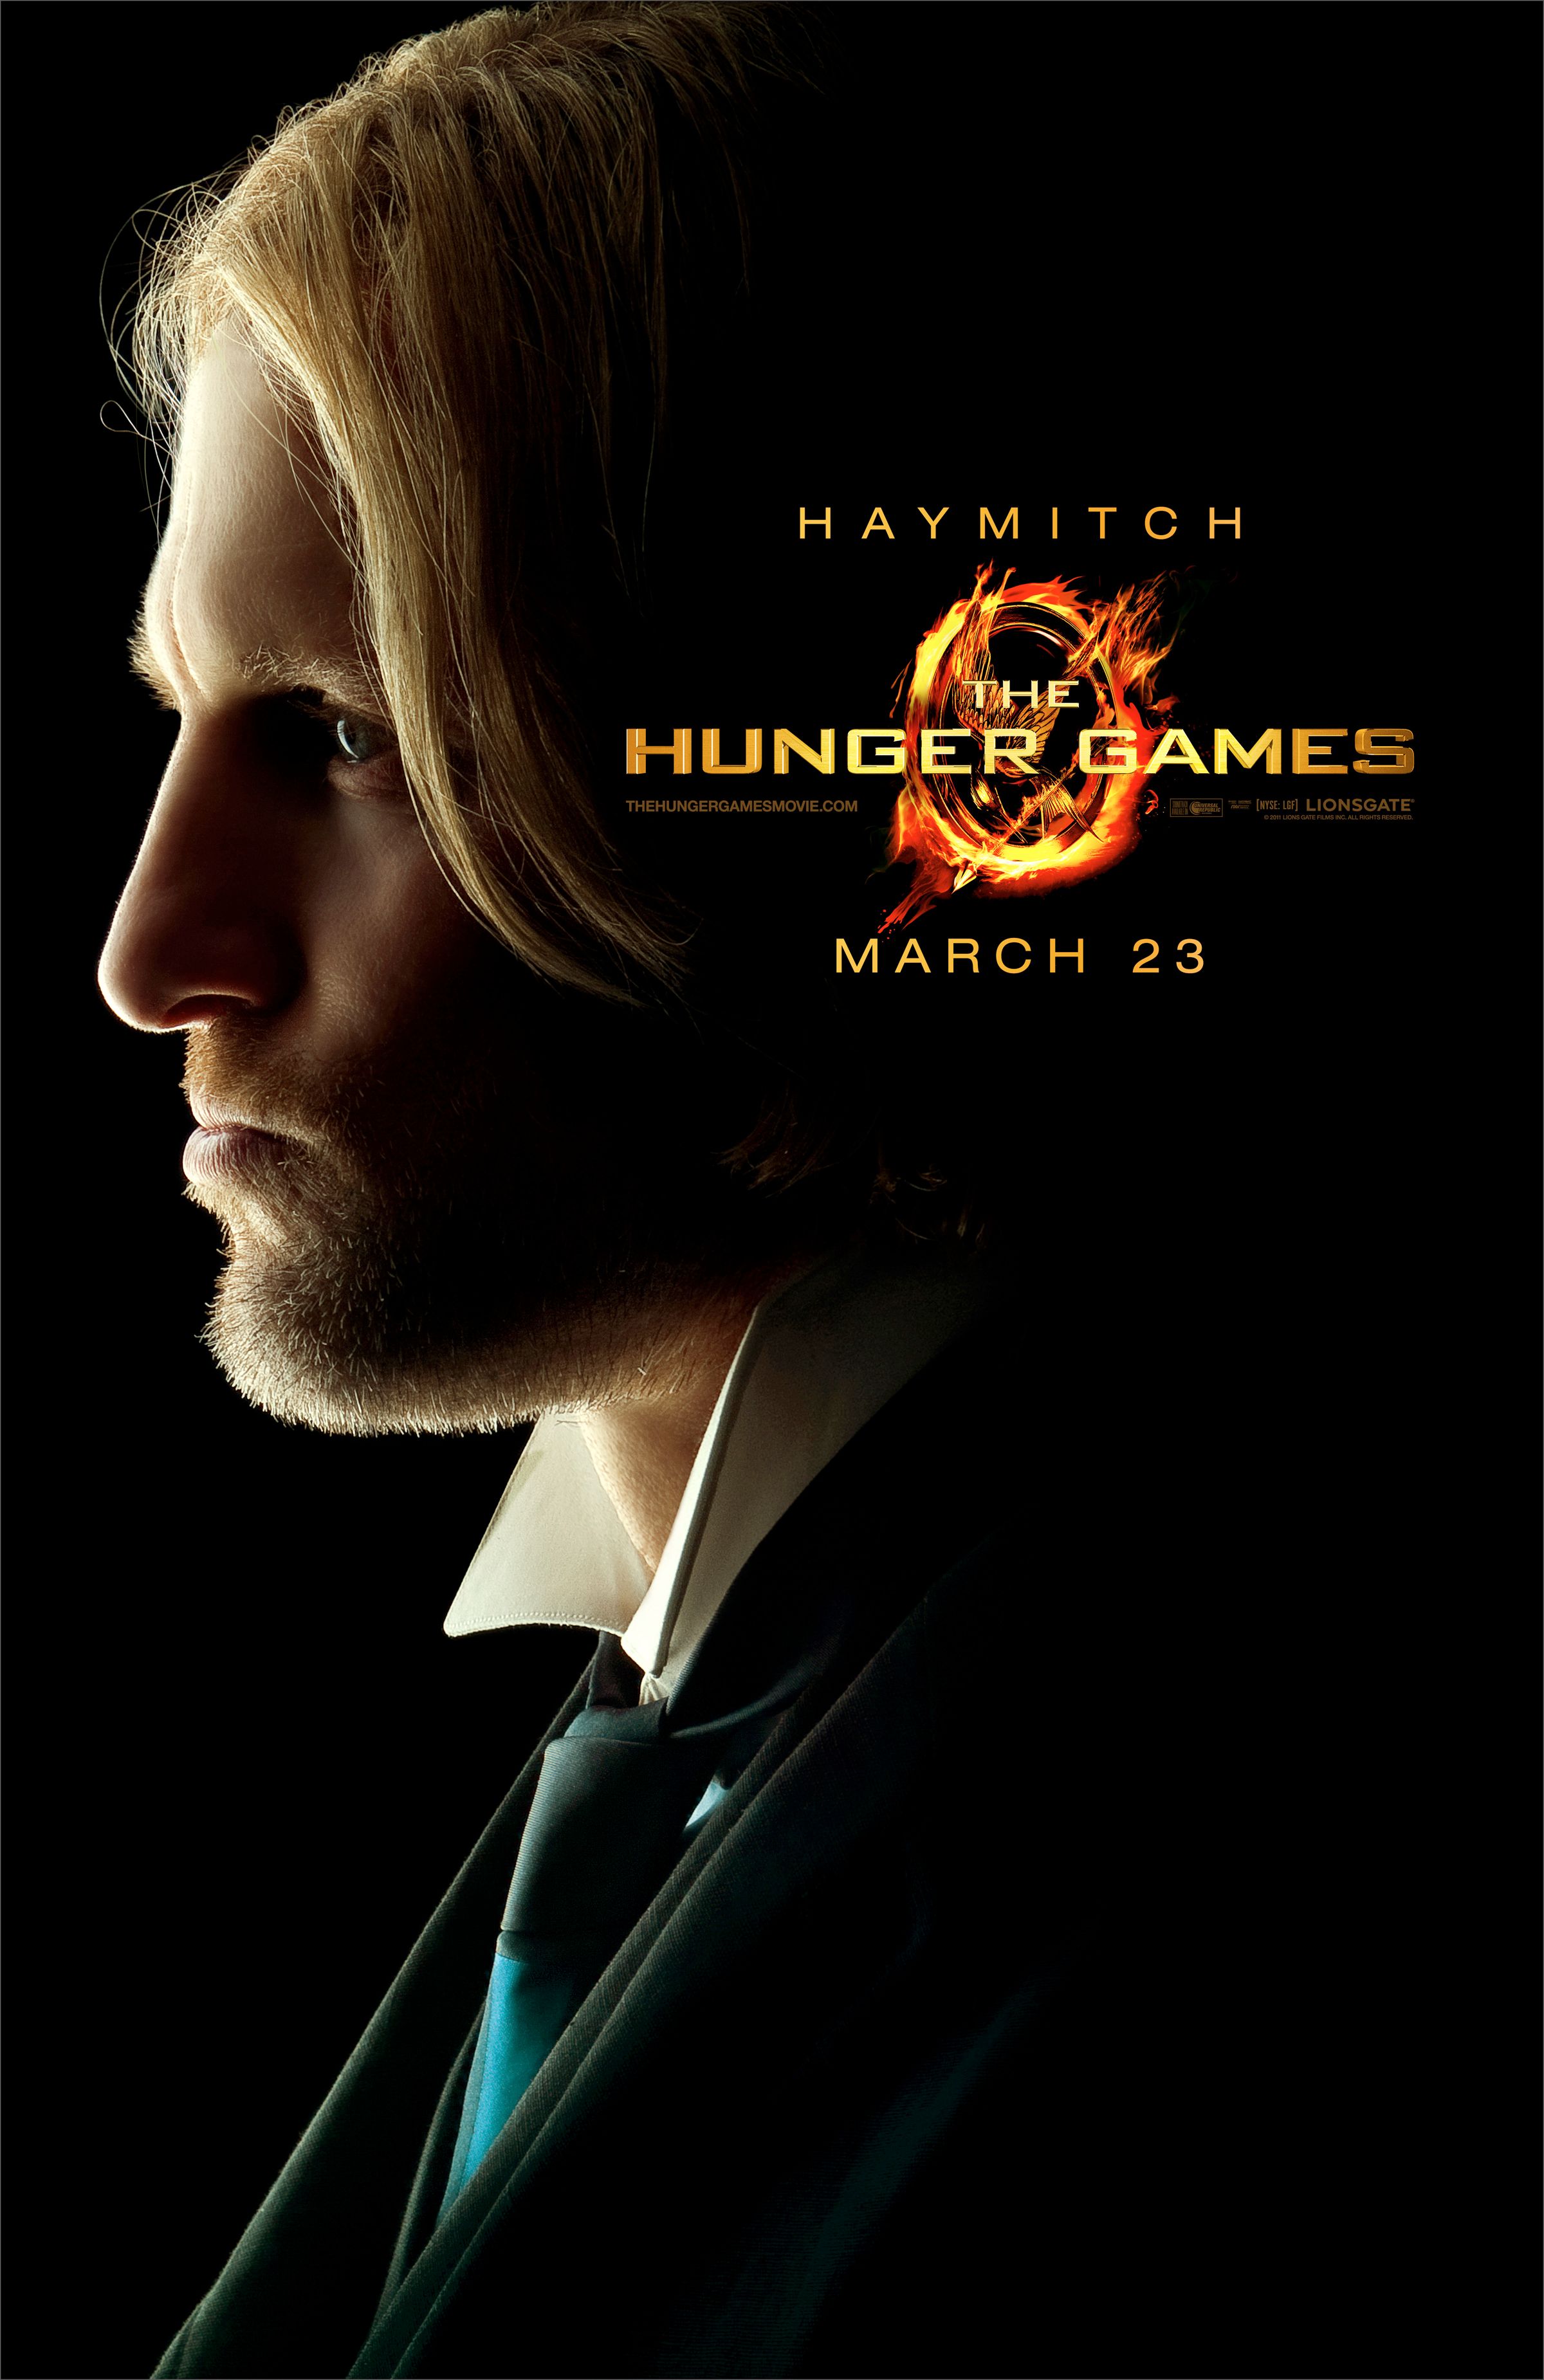 Woody Harrelson as Haymitch Abernathy